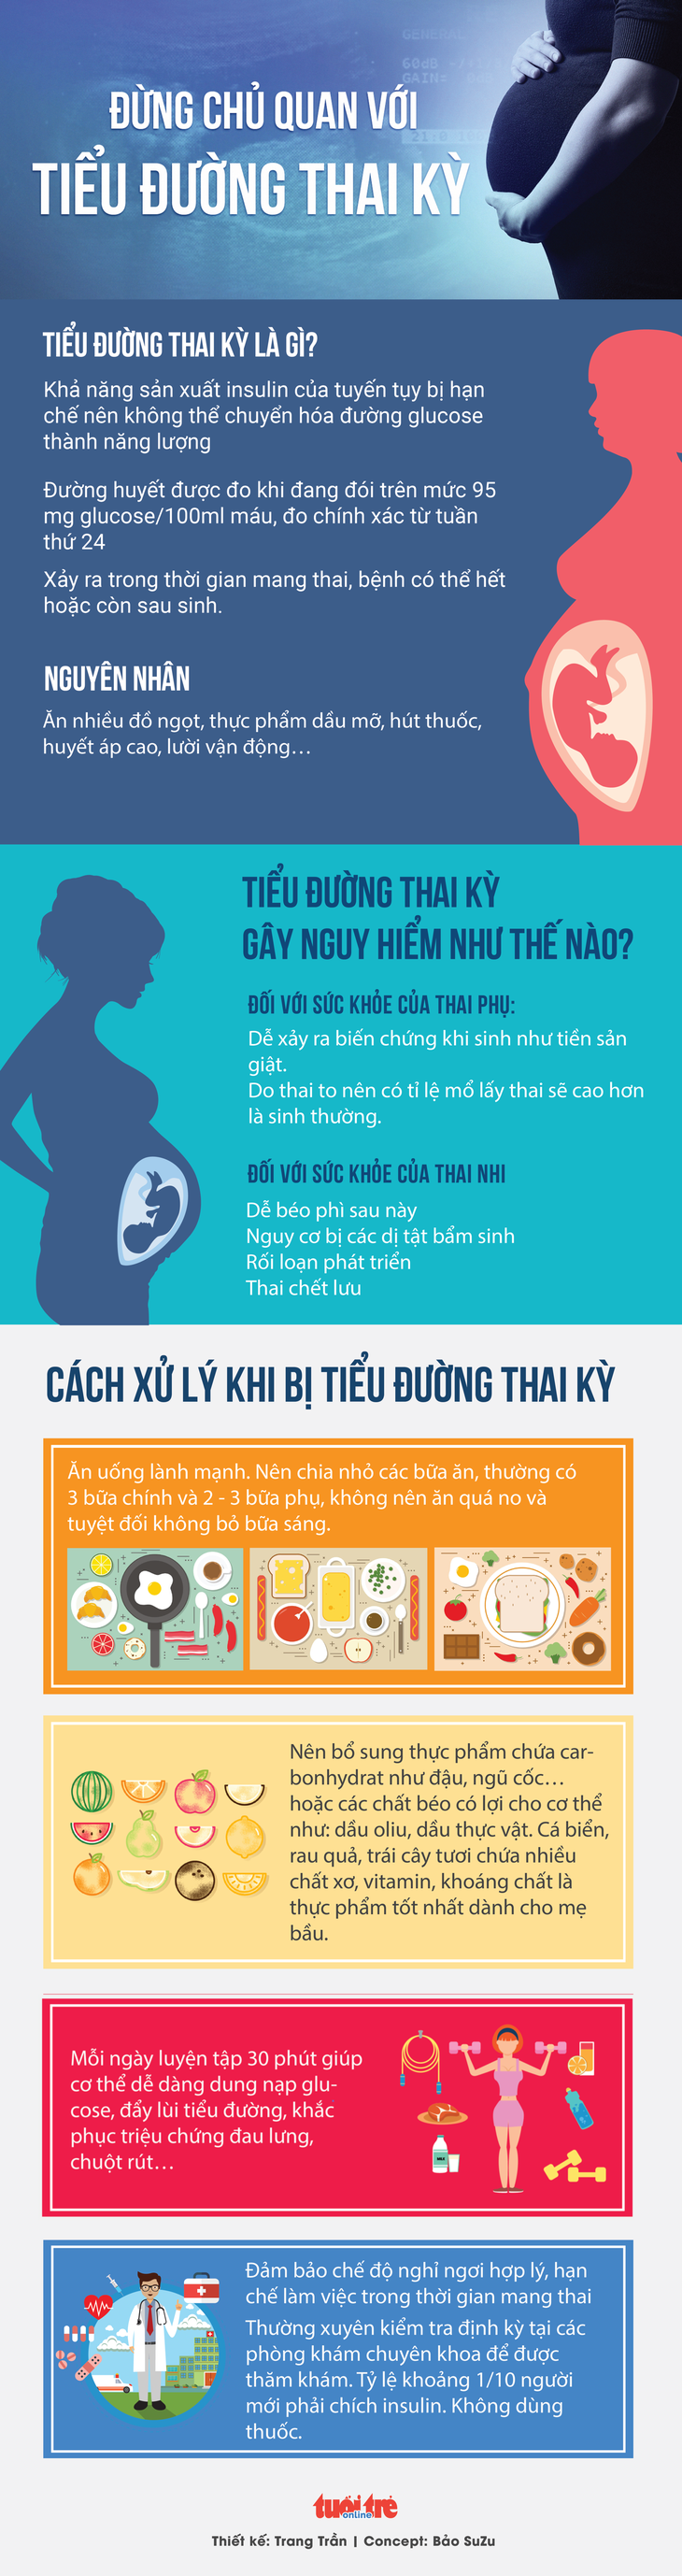 Thai nhi có thể chết lưu vì tiểu đường thai kỳ, mẹ đừng chủ quan - Ảnh 1.